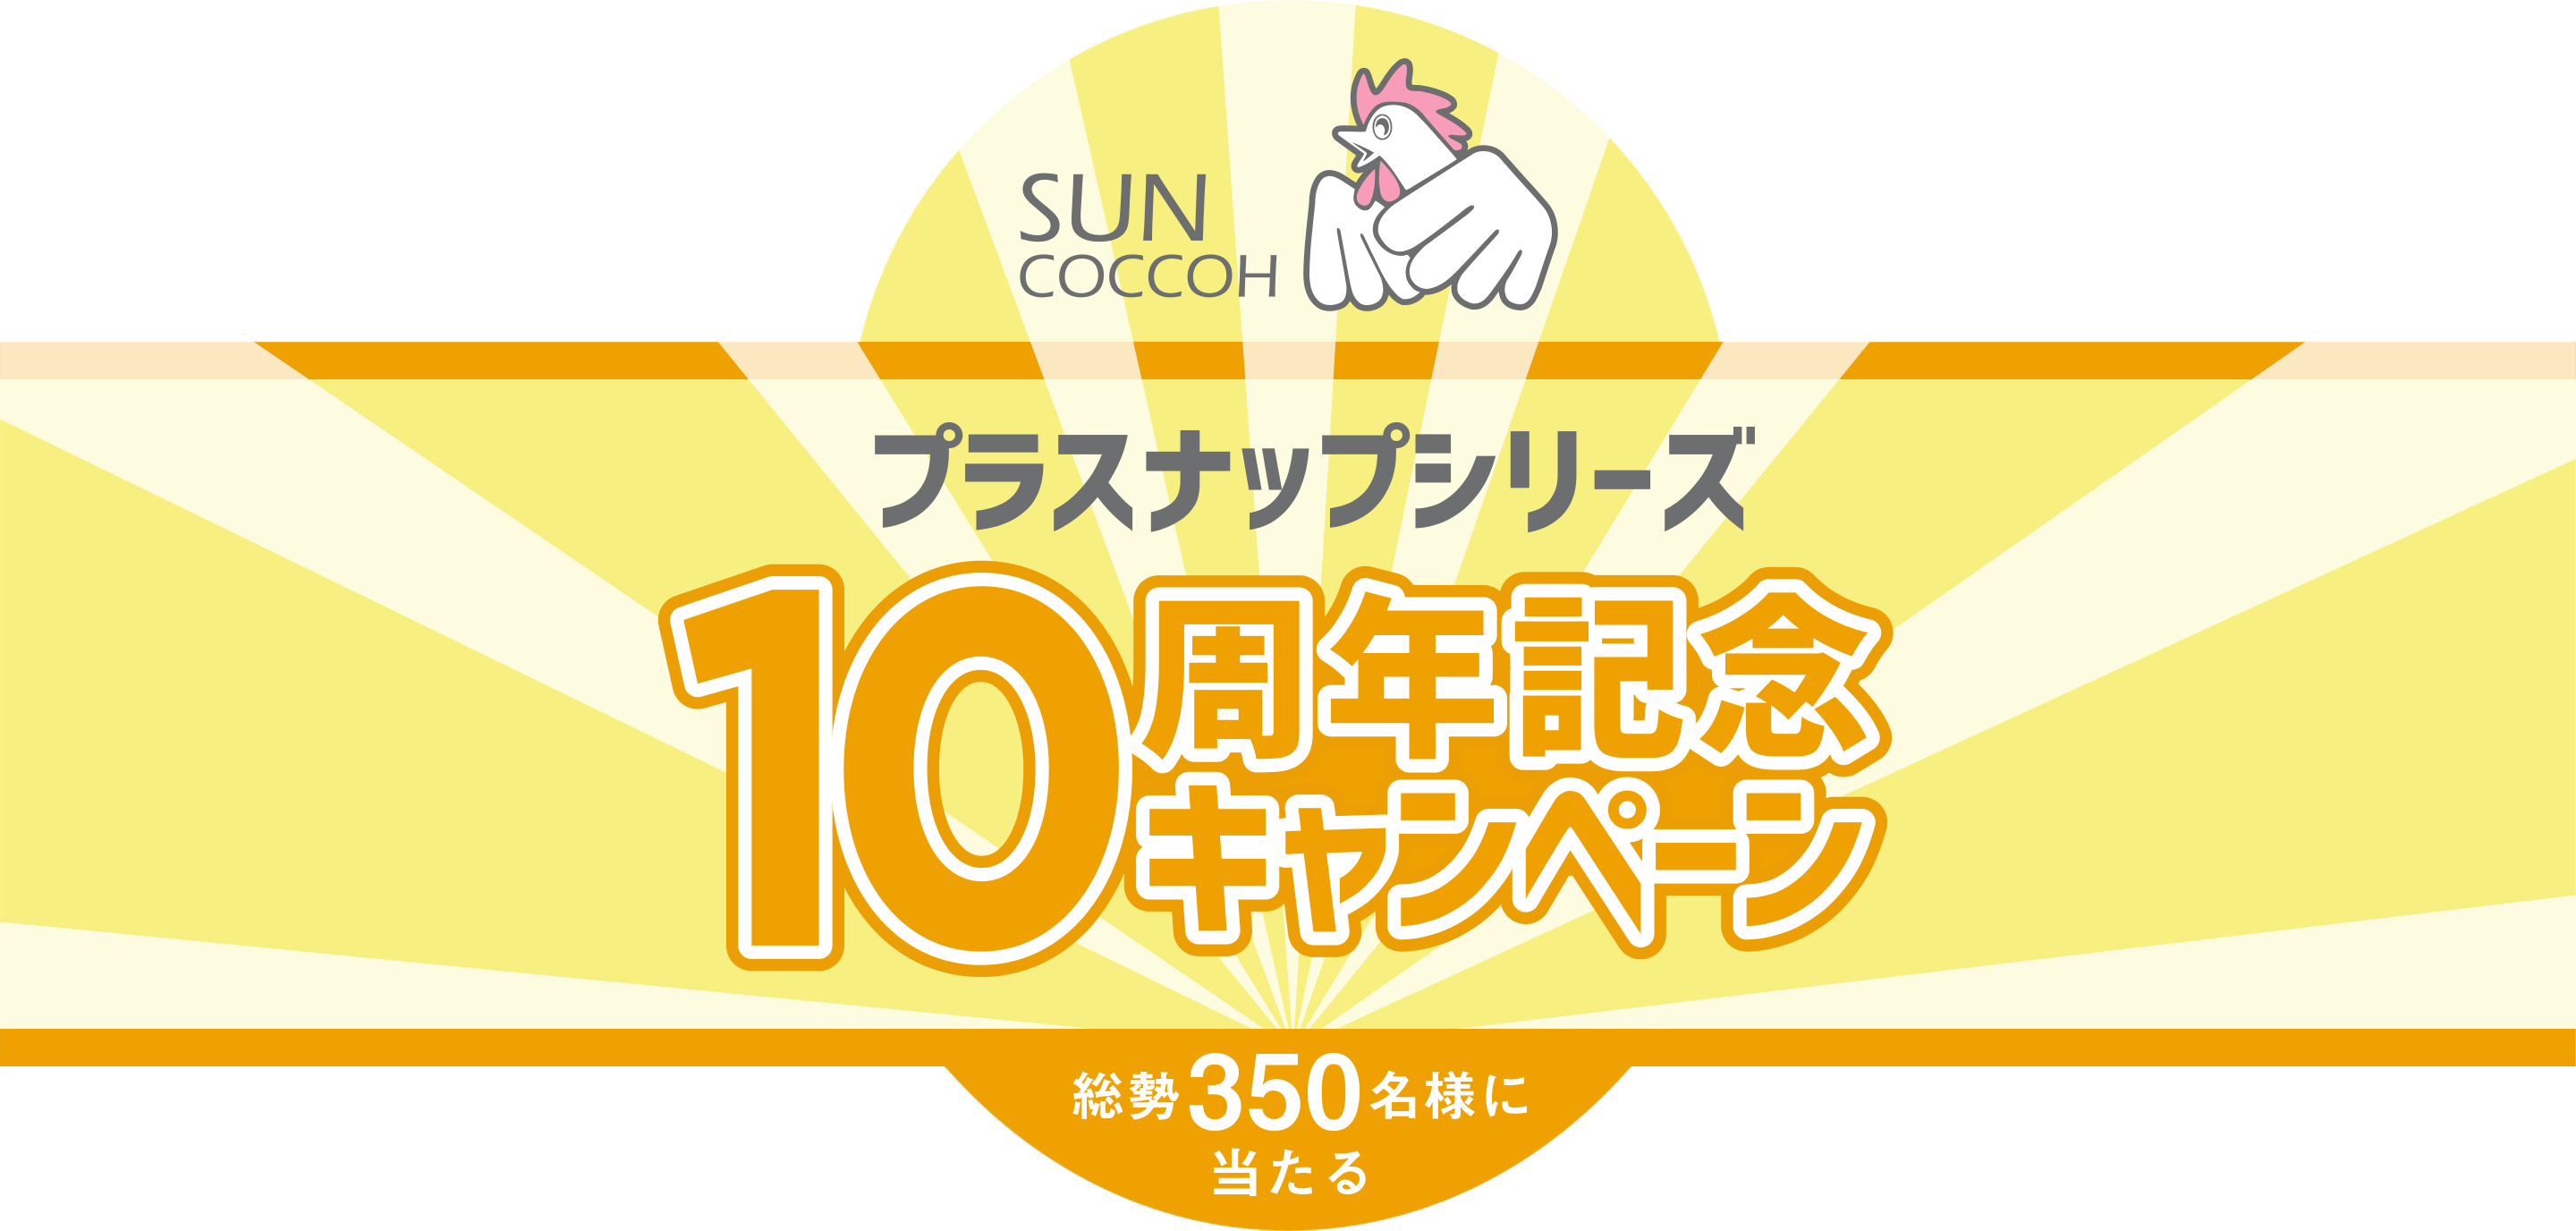 SUNCOCCOHプラスナップシリーズ10周年記念キャンペーン